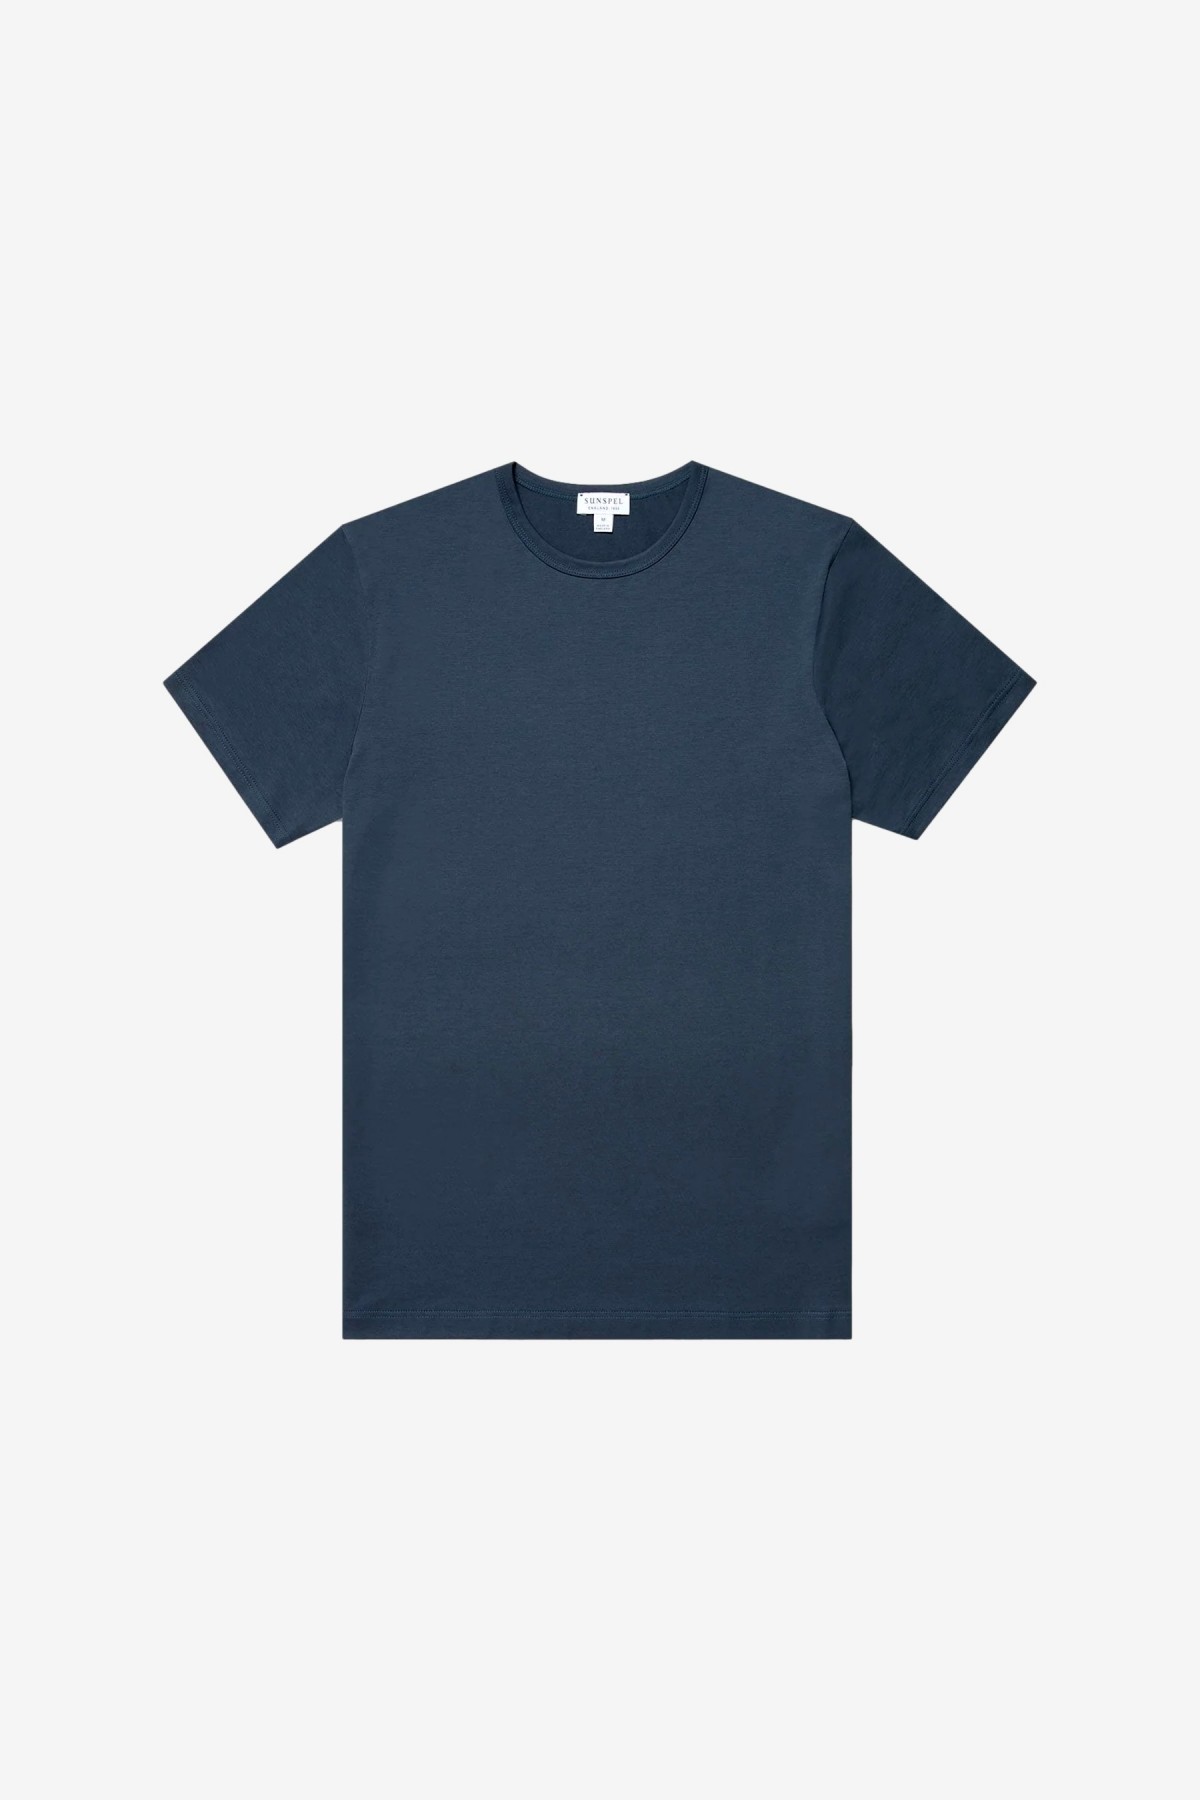 Sunspel SS Crew Neck T-Shirt in Shale Blue